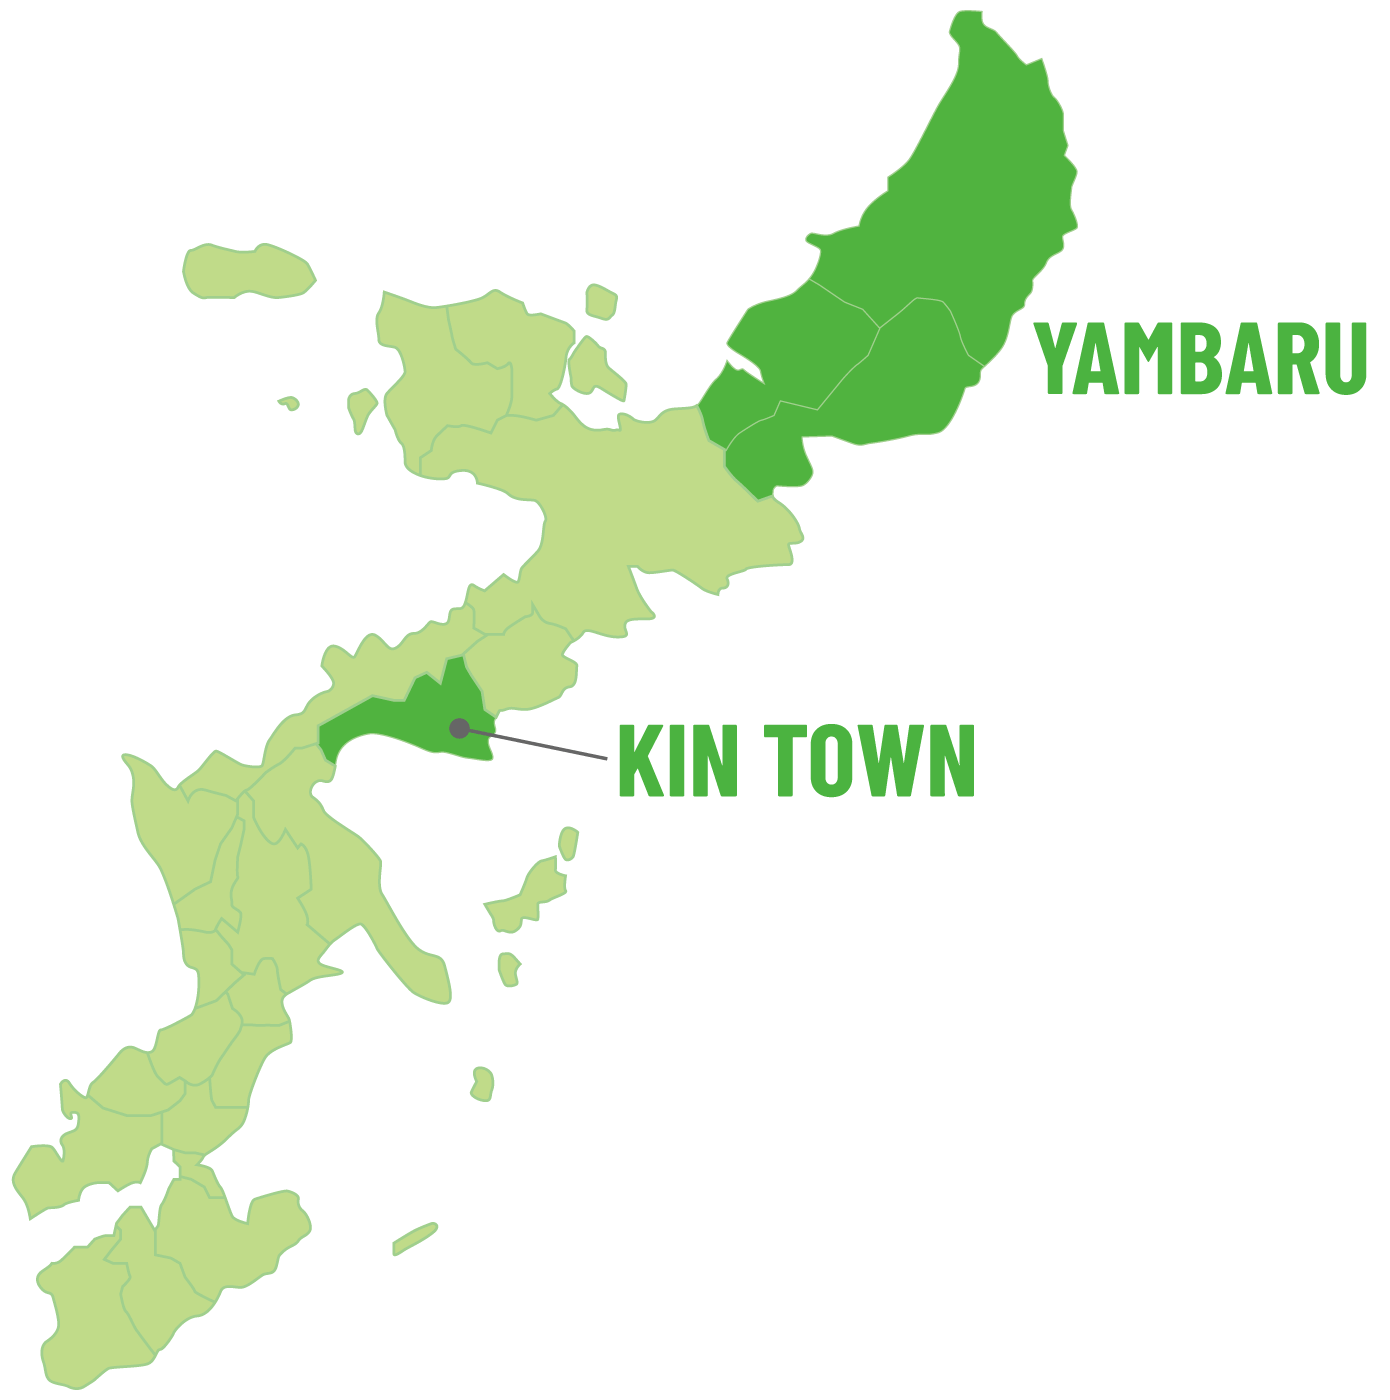 金武町とやんばるを示した沖縄本島の地図